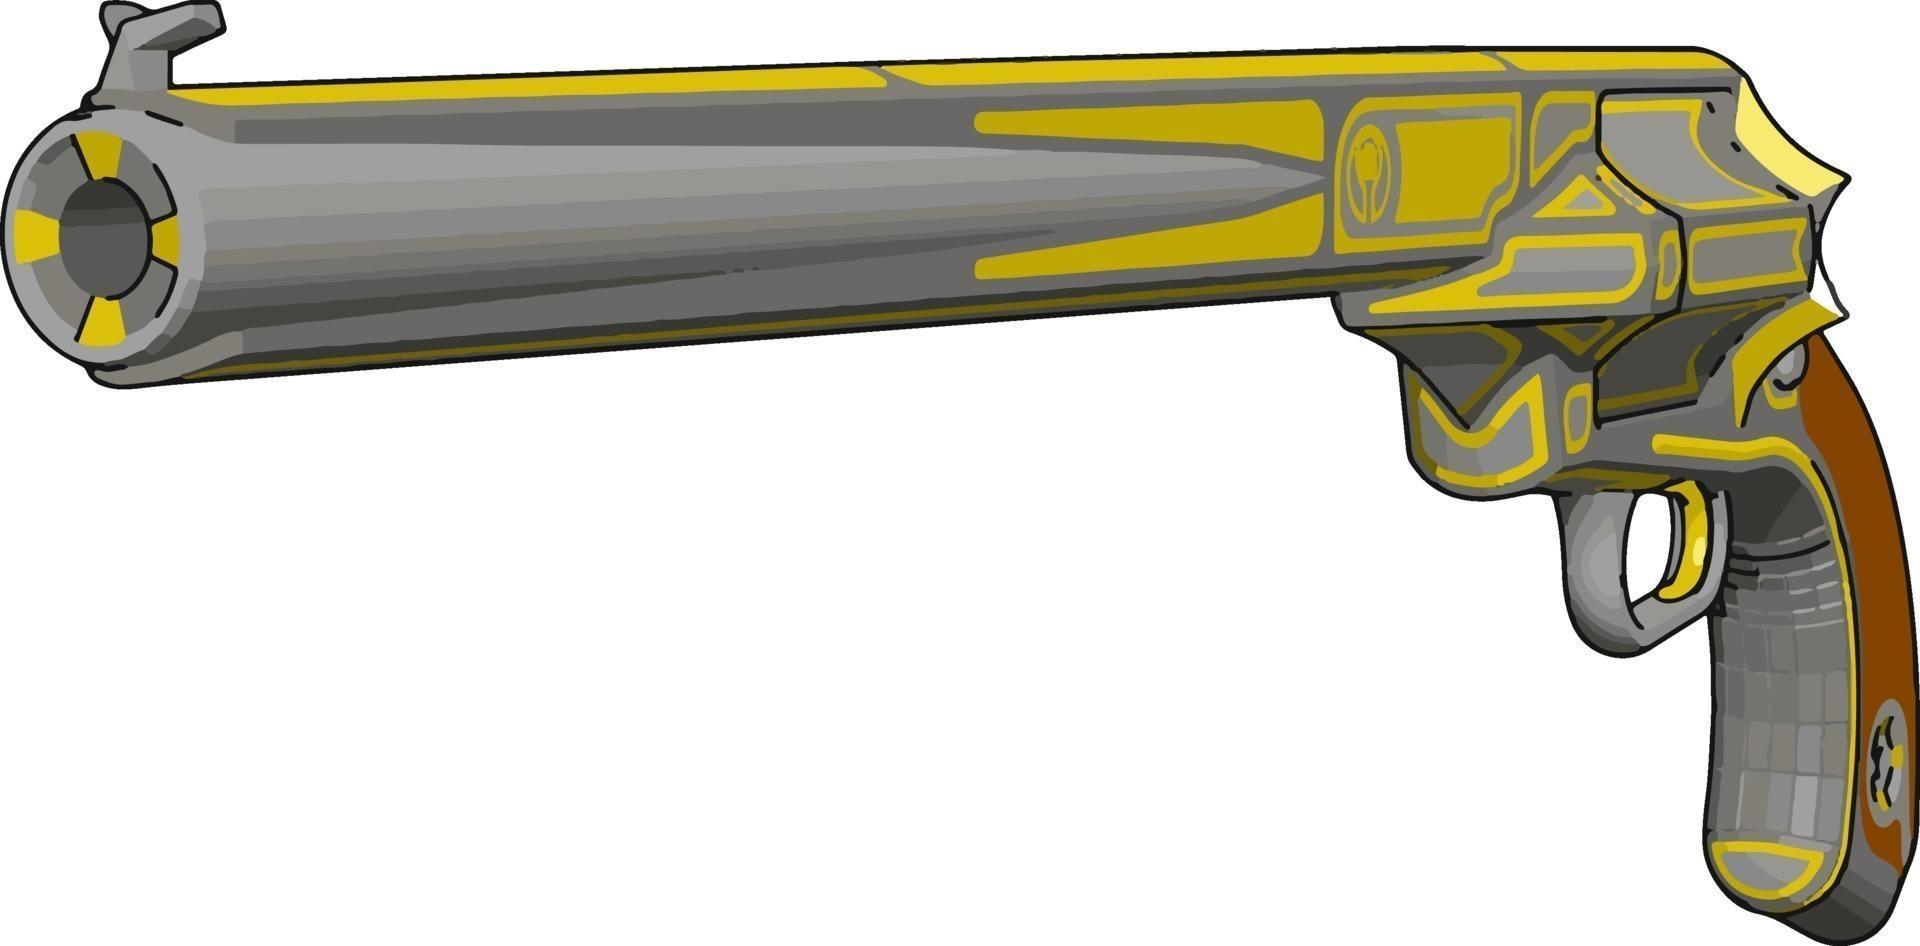 ancien pistolet rétro, illustration, vecteur sur fond blanc.